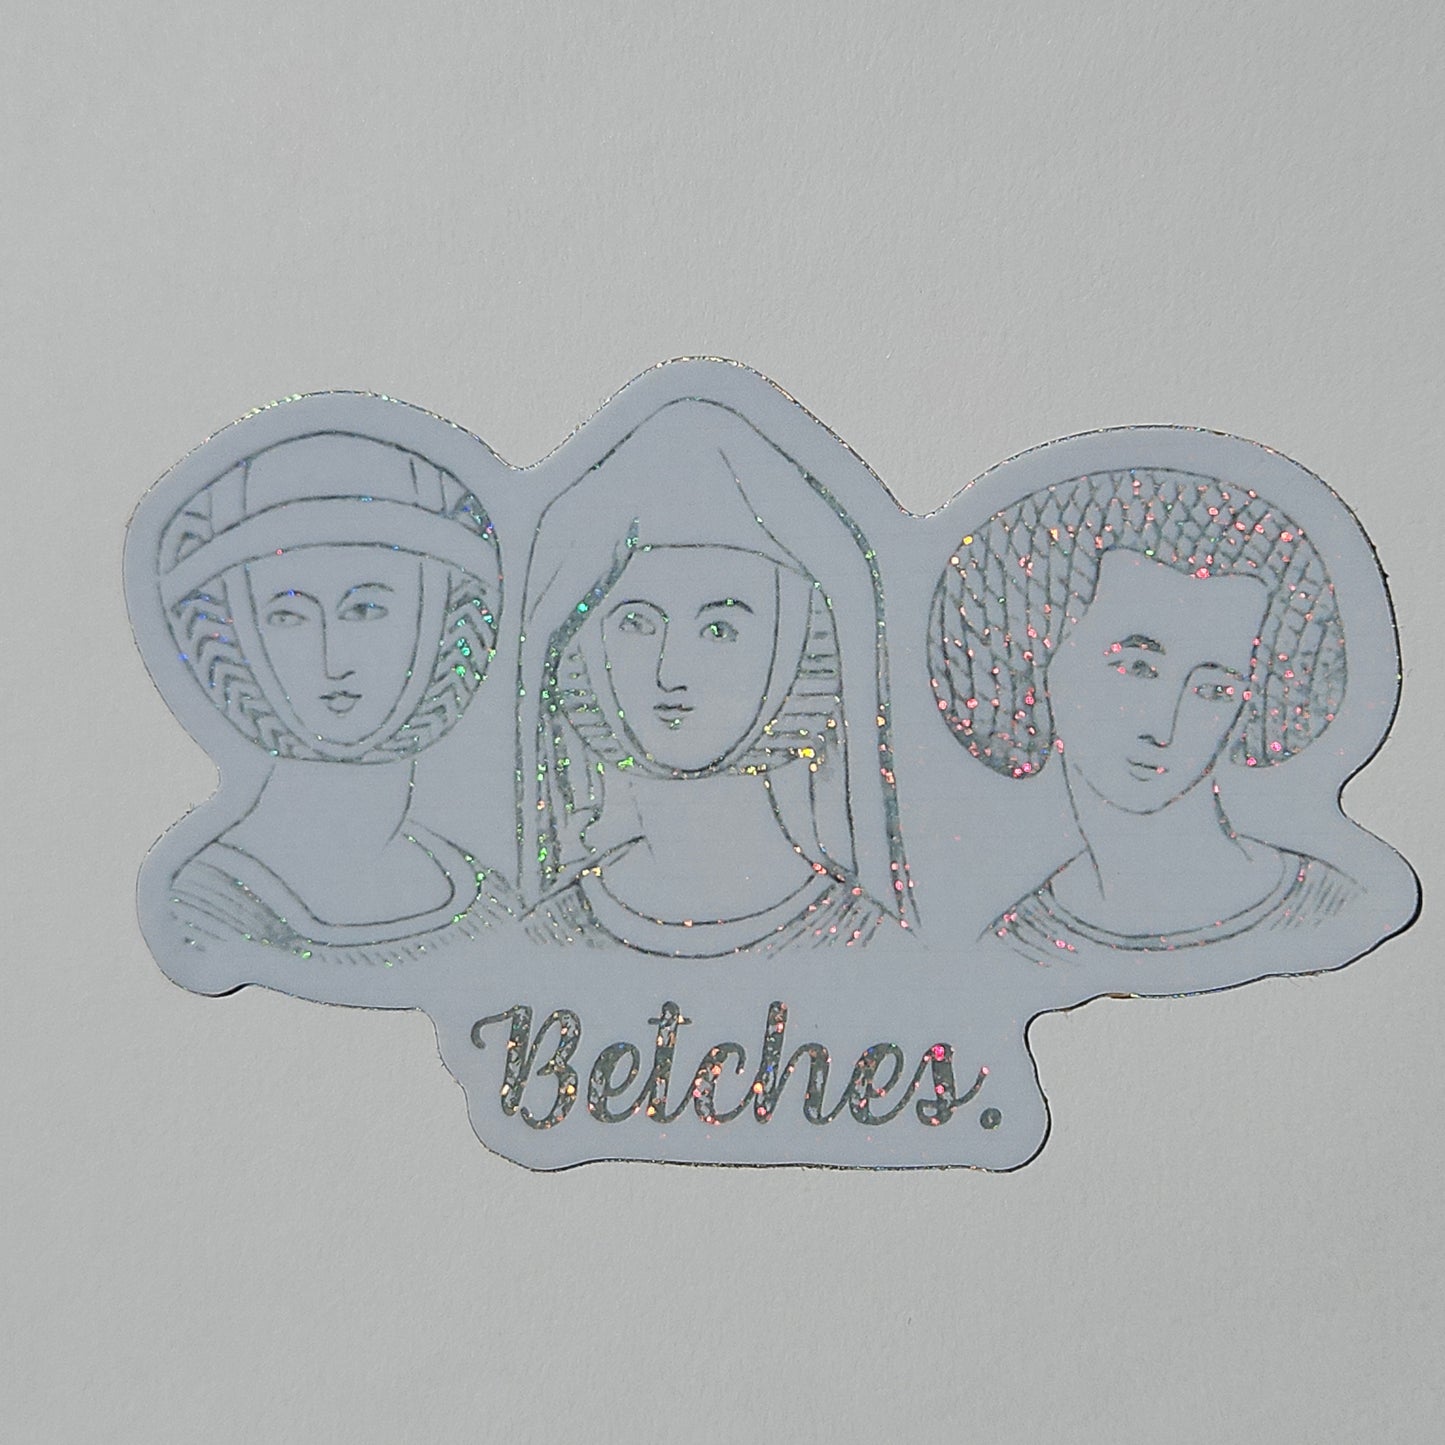 "Betches." Sticker